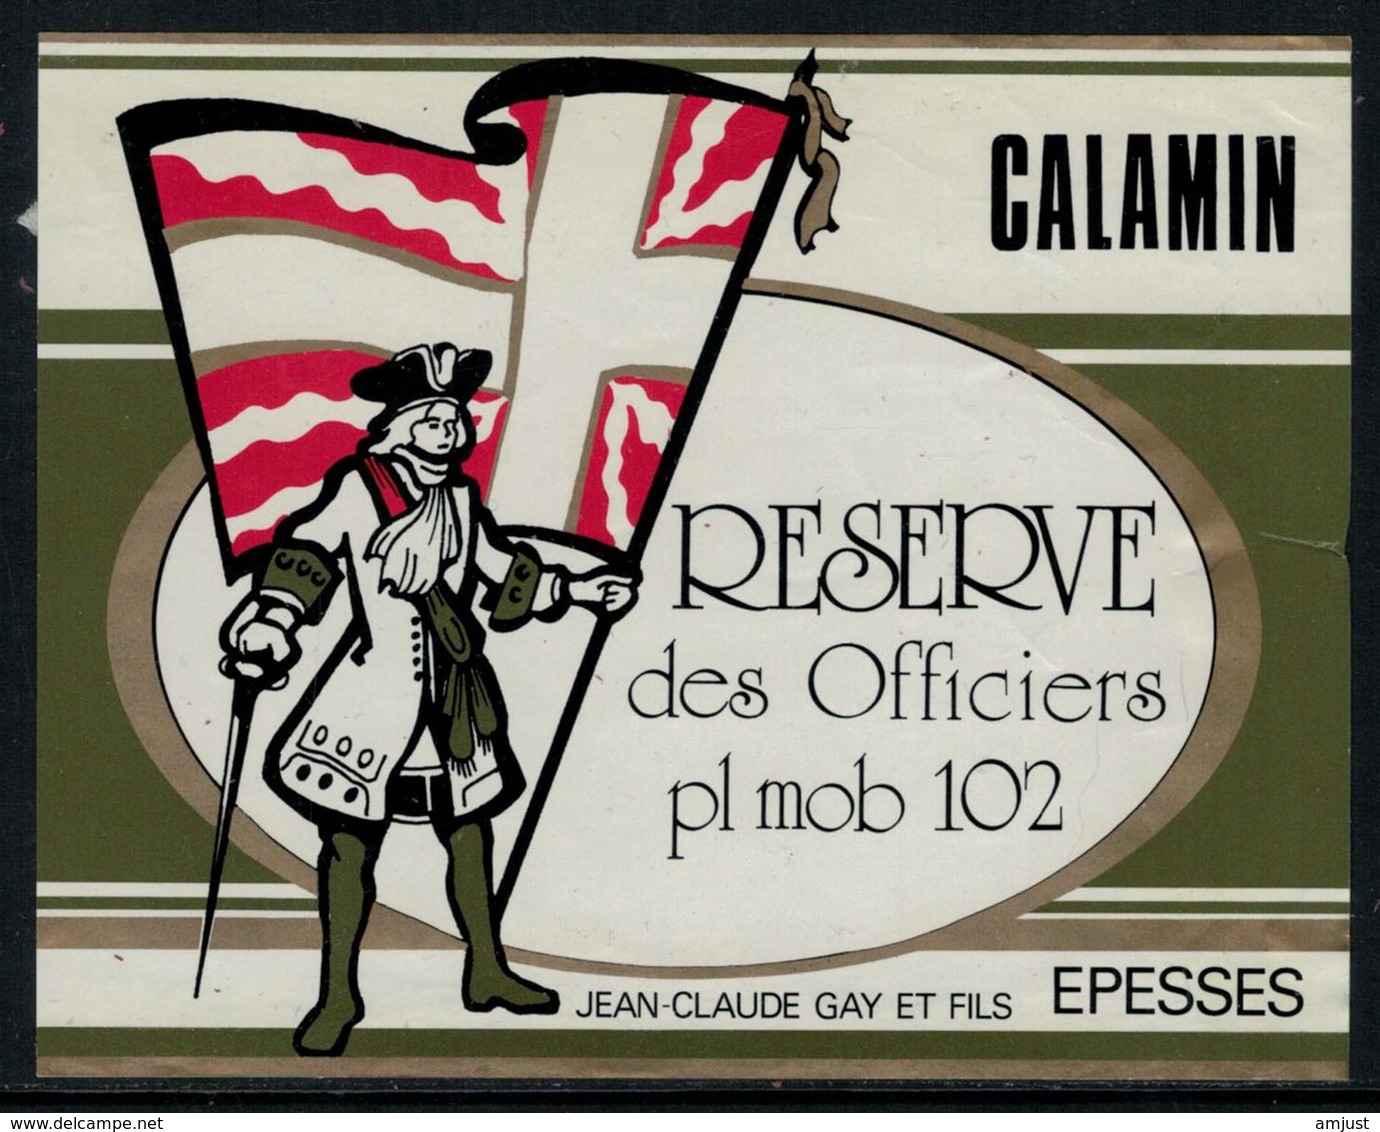 Rare // Etiquette De Vin // Militaire // Calamin, Réserve Des Officiers Pl.mob.102 - Military